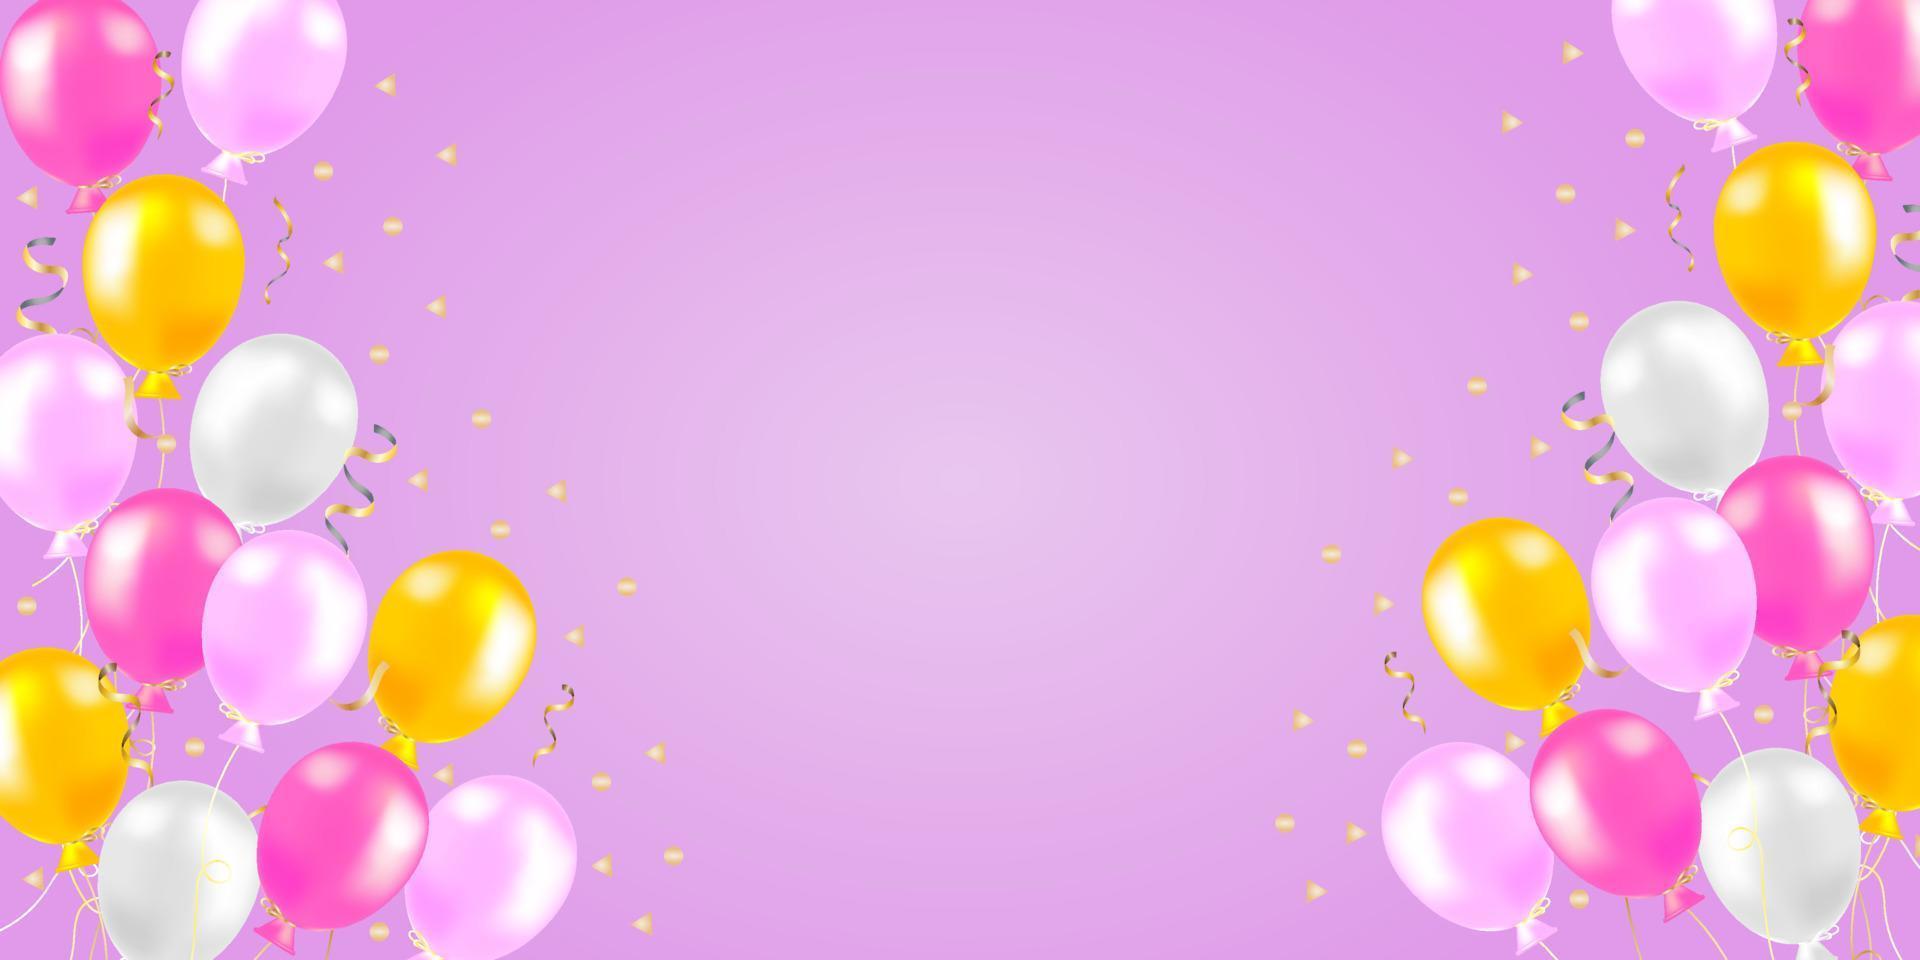 fondo de globos de eventos especiales, globos de aire realistas de color rosa y amarillo y confeti sobre fondo rosa. concepto festivo de tarjeta de felicitación o pancarta. ilustración vectorial vector